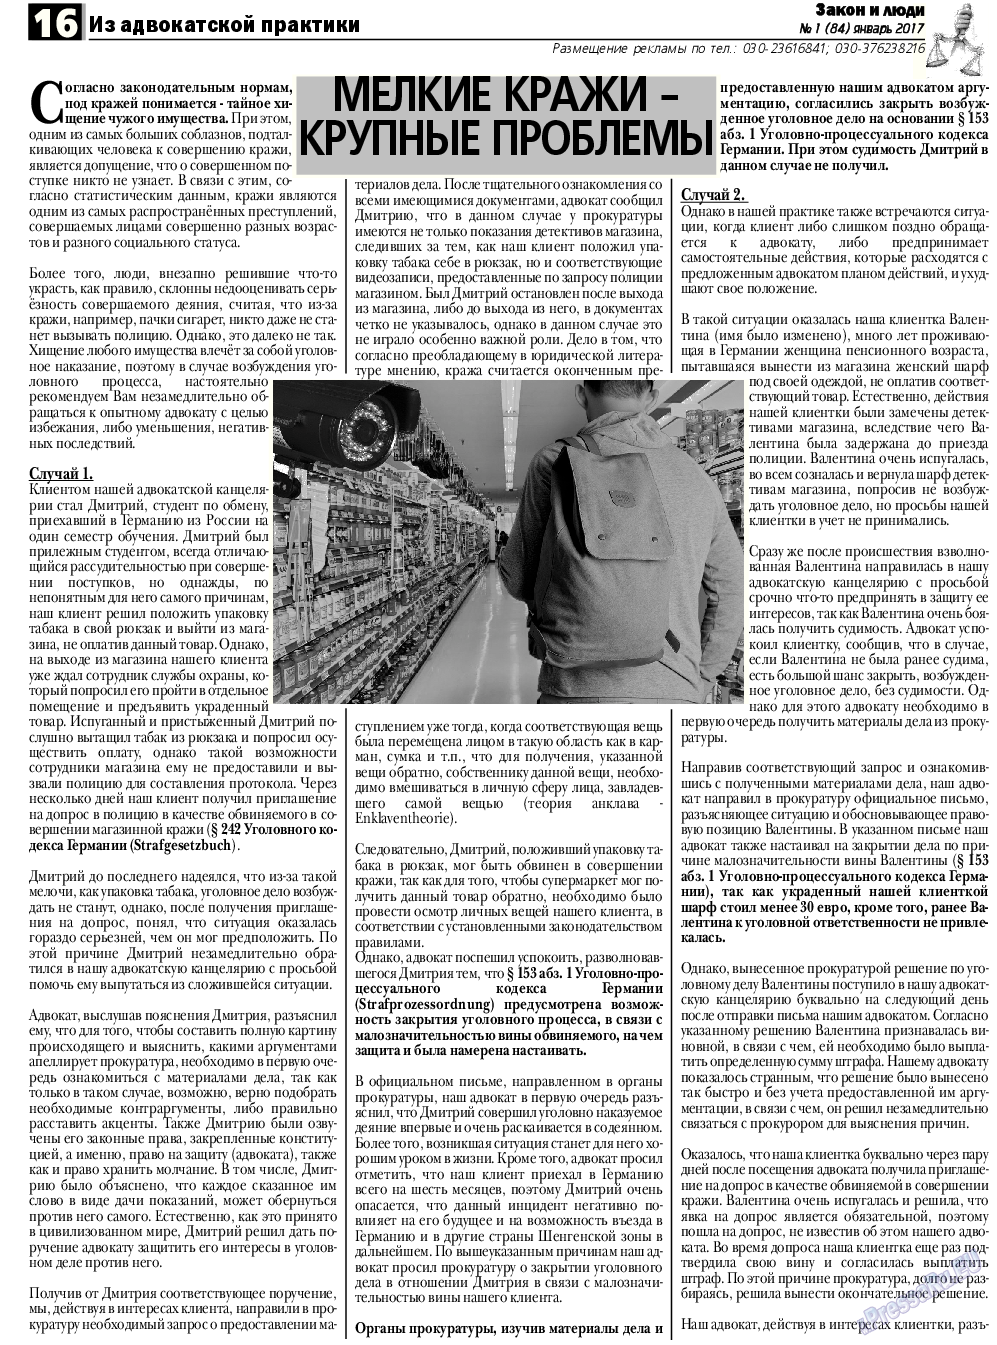 Закон и люди, газета. 2017 №1 стр.16